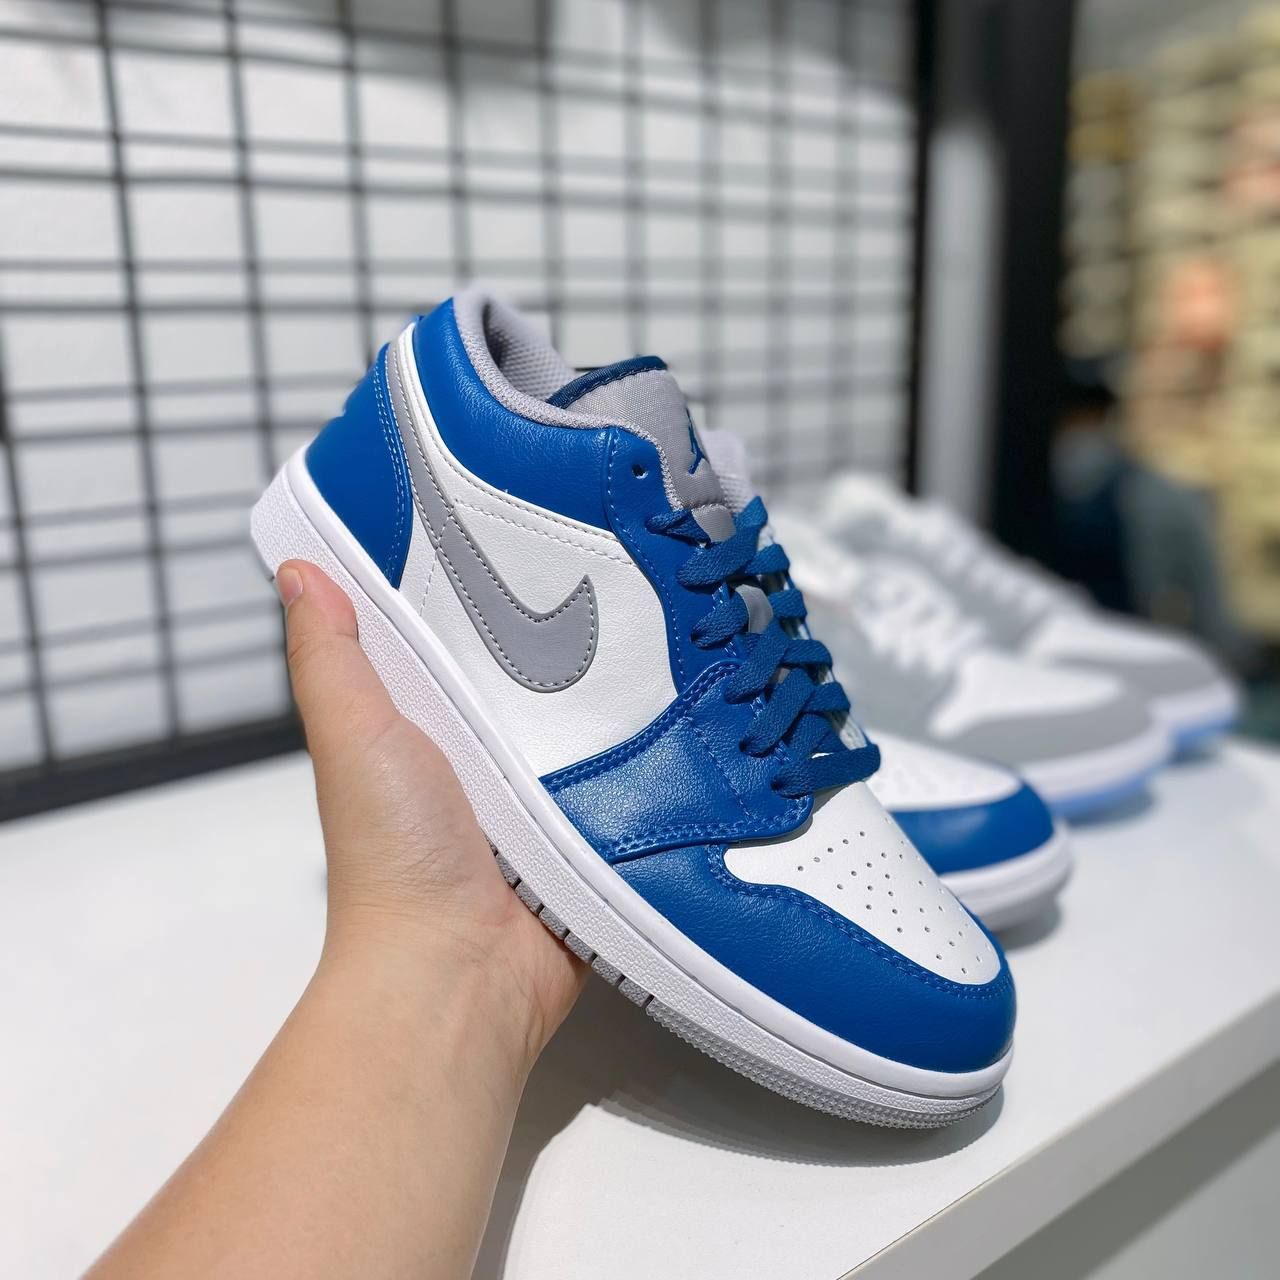  Giày Nike Jordan Low True Blue Cement 